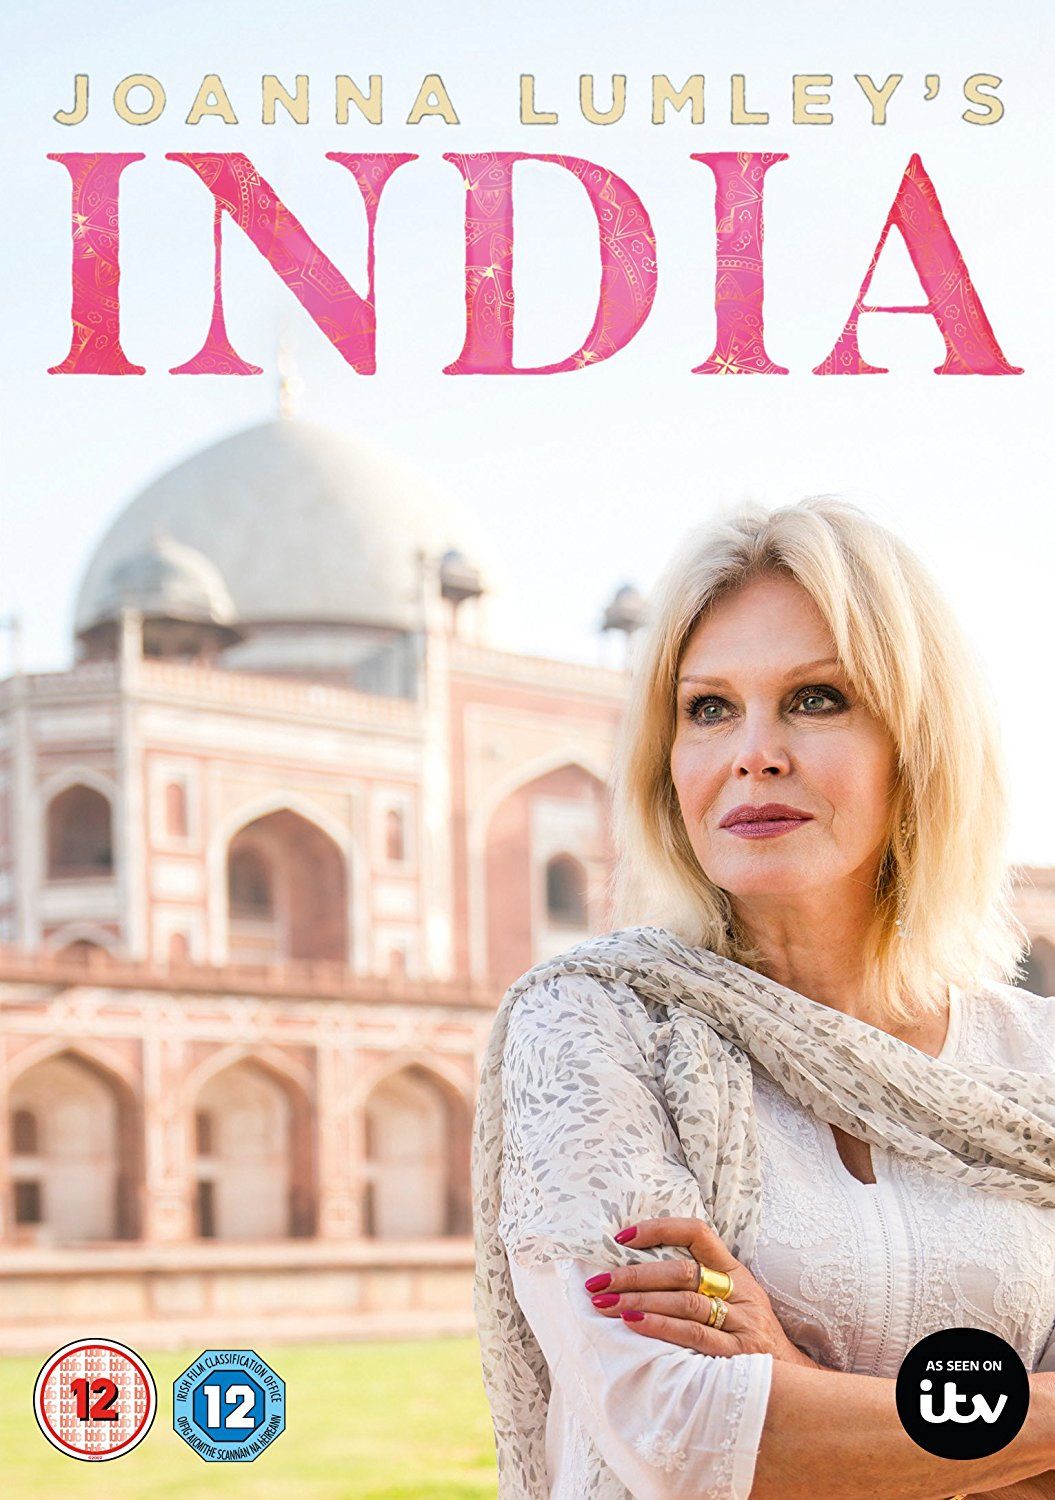 Joanna Lumley's India ne zaman